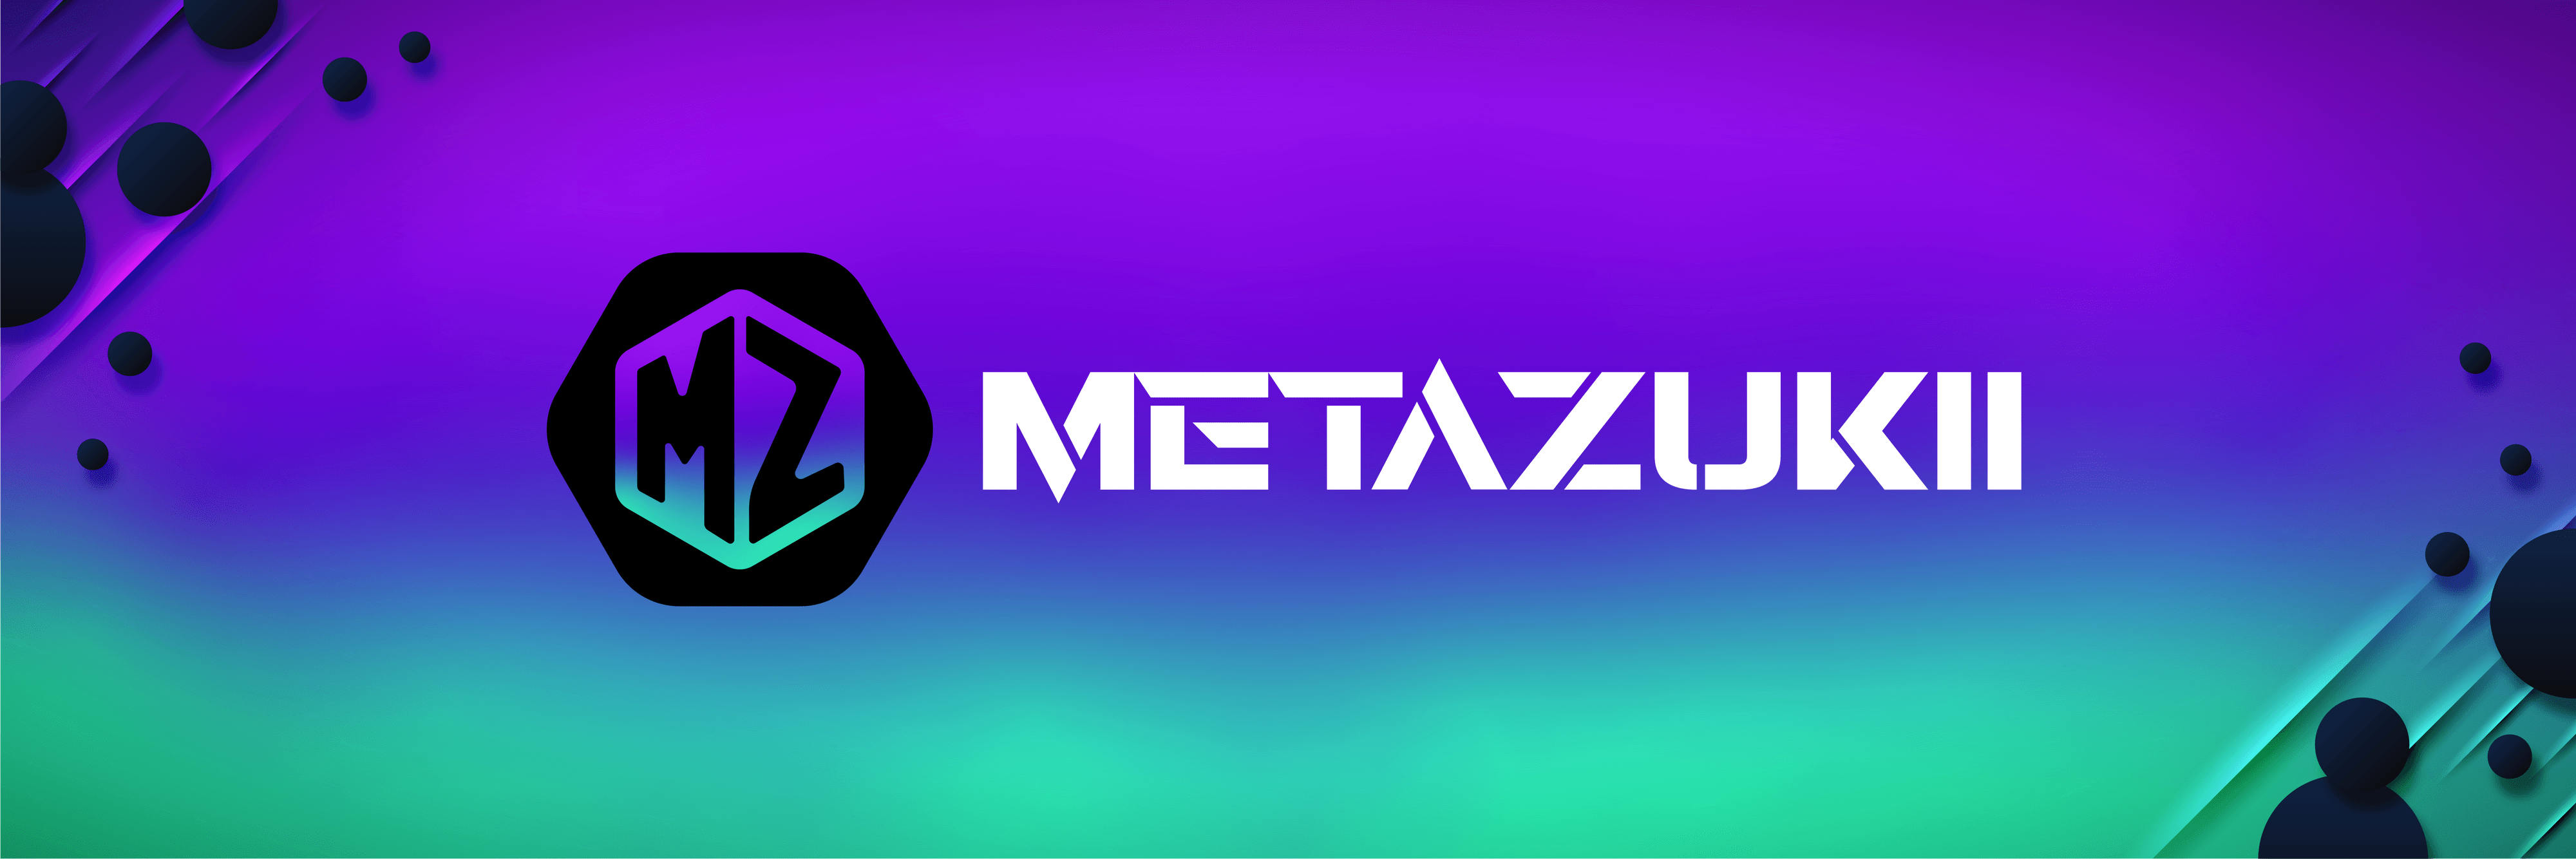 Meta-Zukii banner